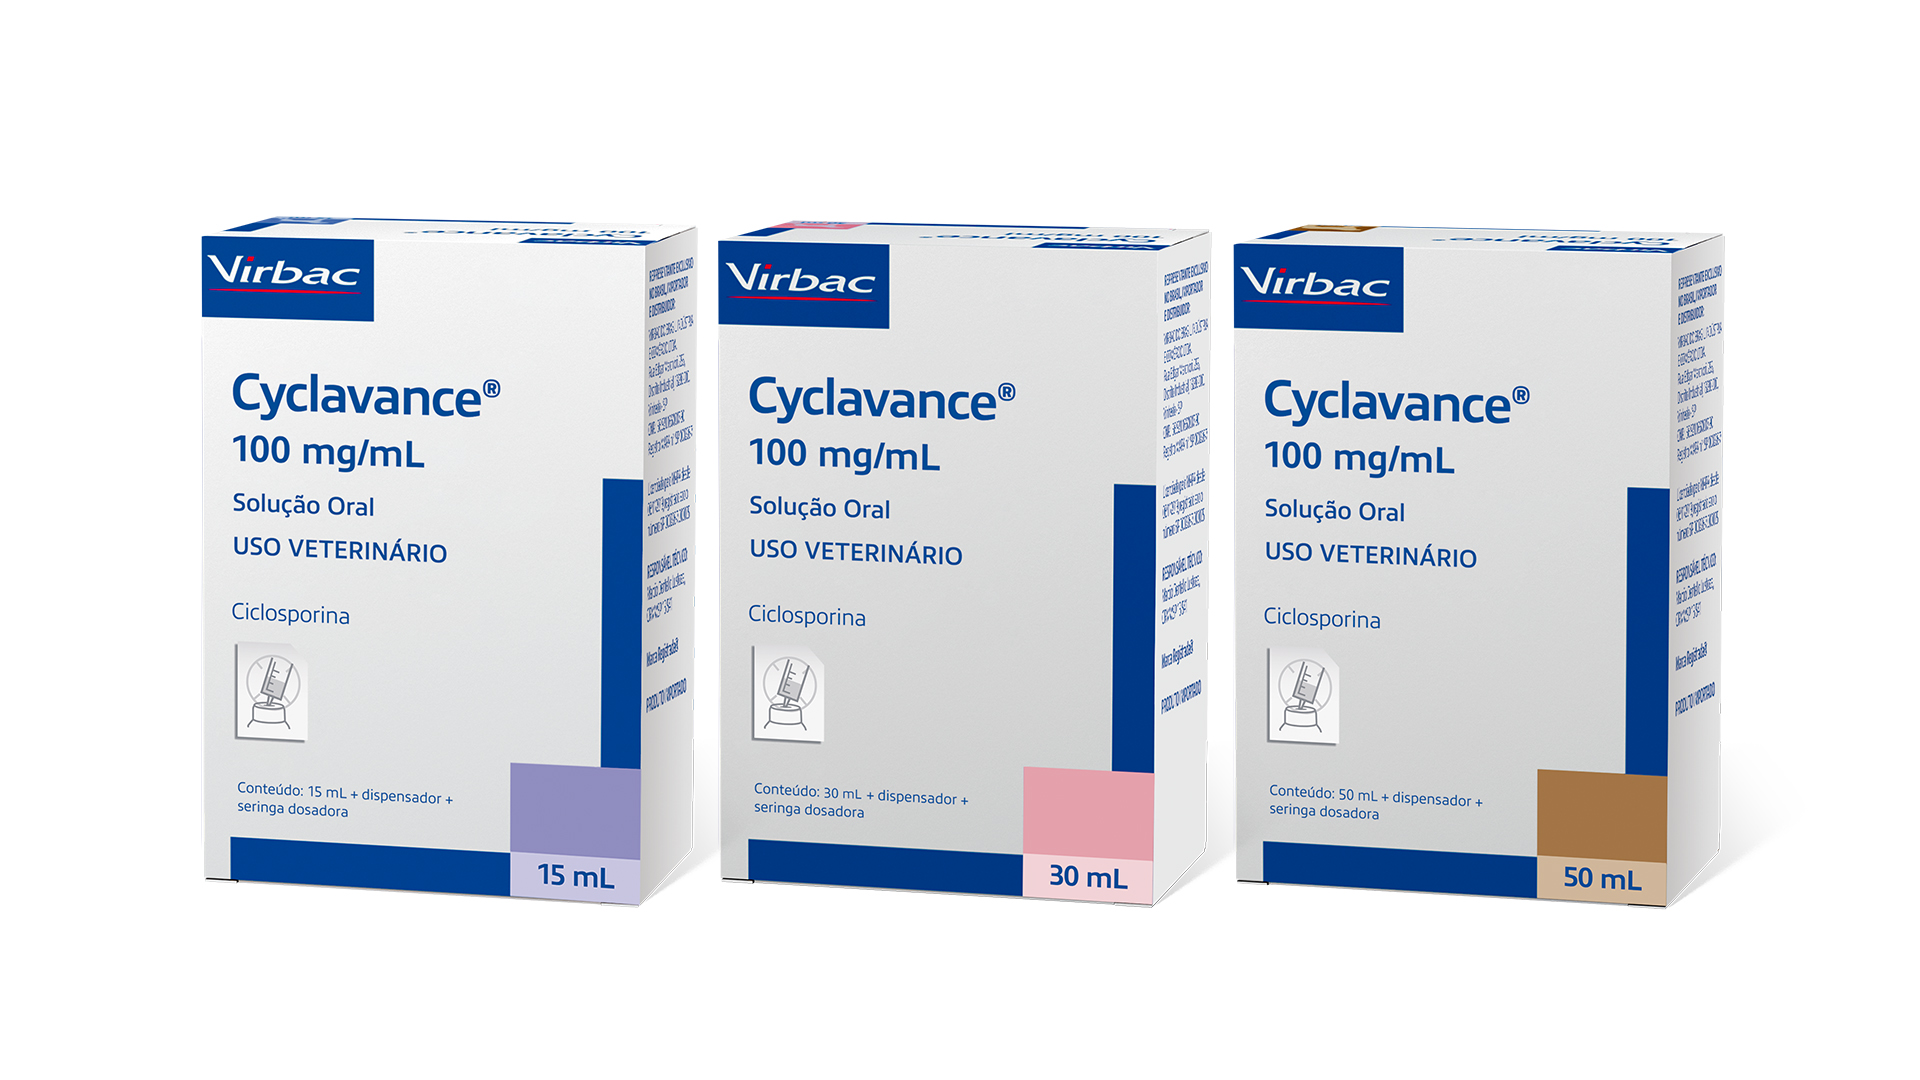 Cyclavance®, ciclosporina líquida em microemulsão com alta biodisponibilidade nas apresentações de 15 mL, 30 mL e 50 mL. Créditos: Divulgação Virbac 